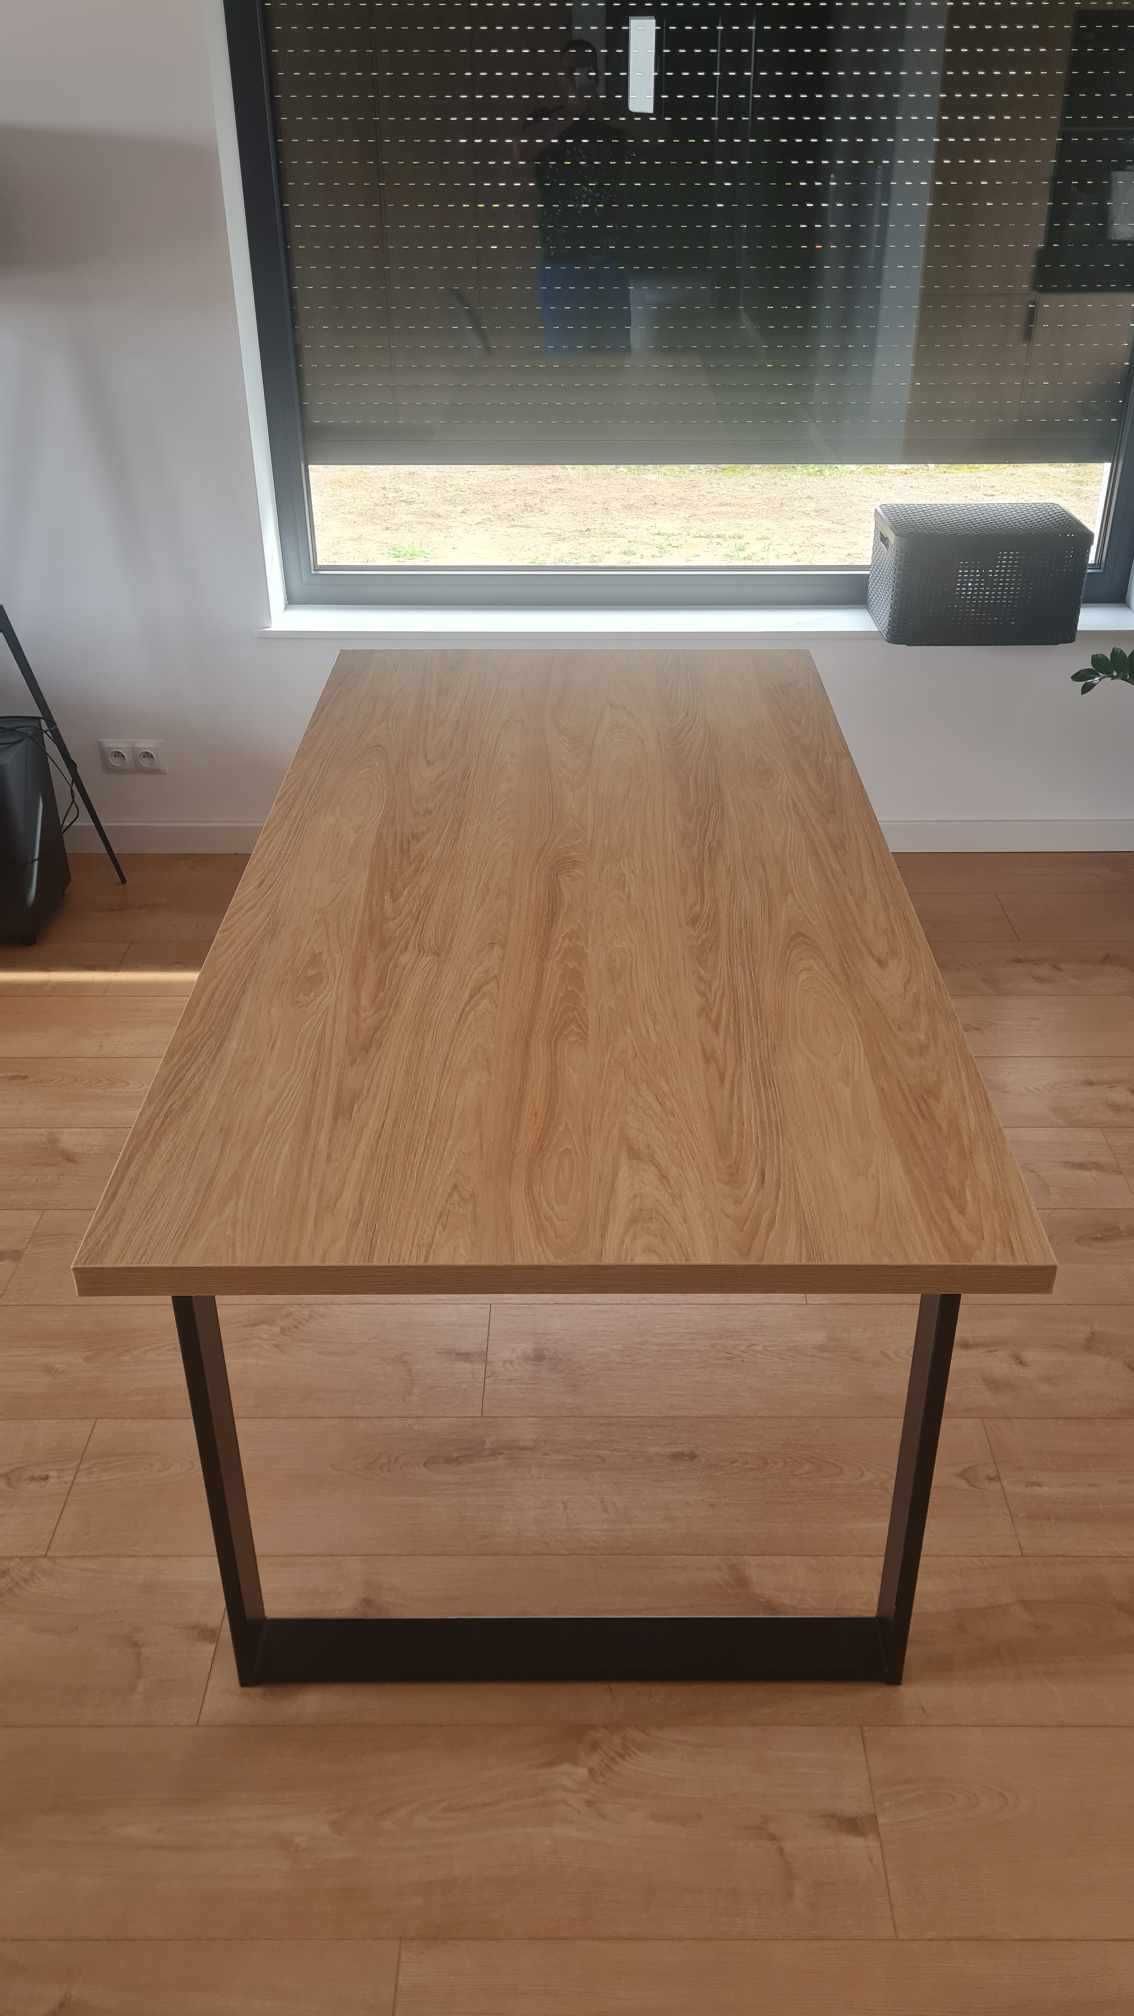 Stół loftowy, nowy